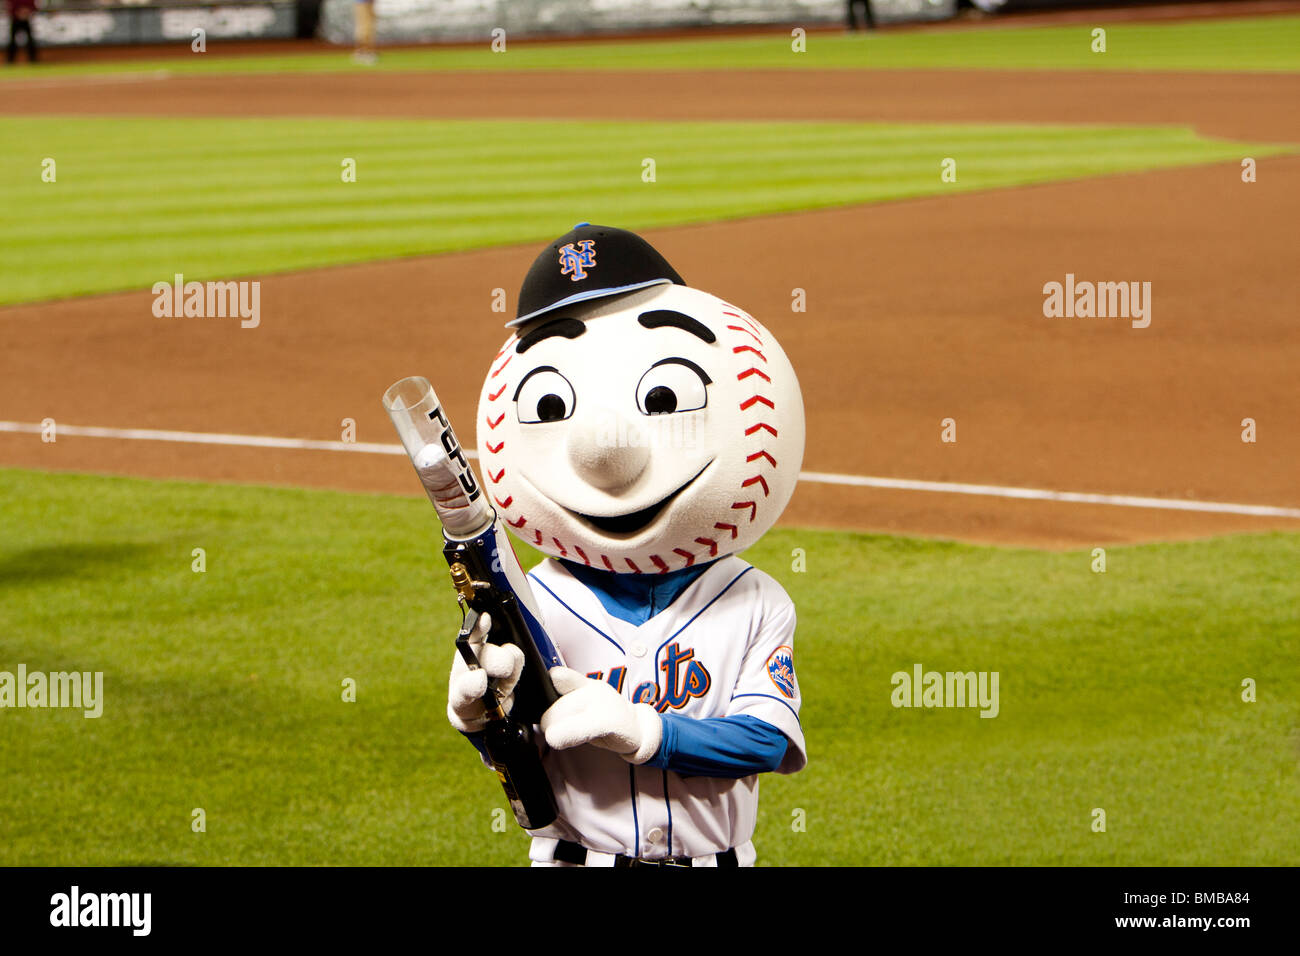 Il sig. mascotte Mets presso la MLB baseball gioco con una t-shirt pistola a Citi Field Park Stadium di New York. Foto Stock